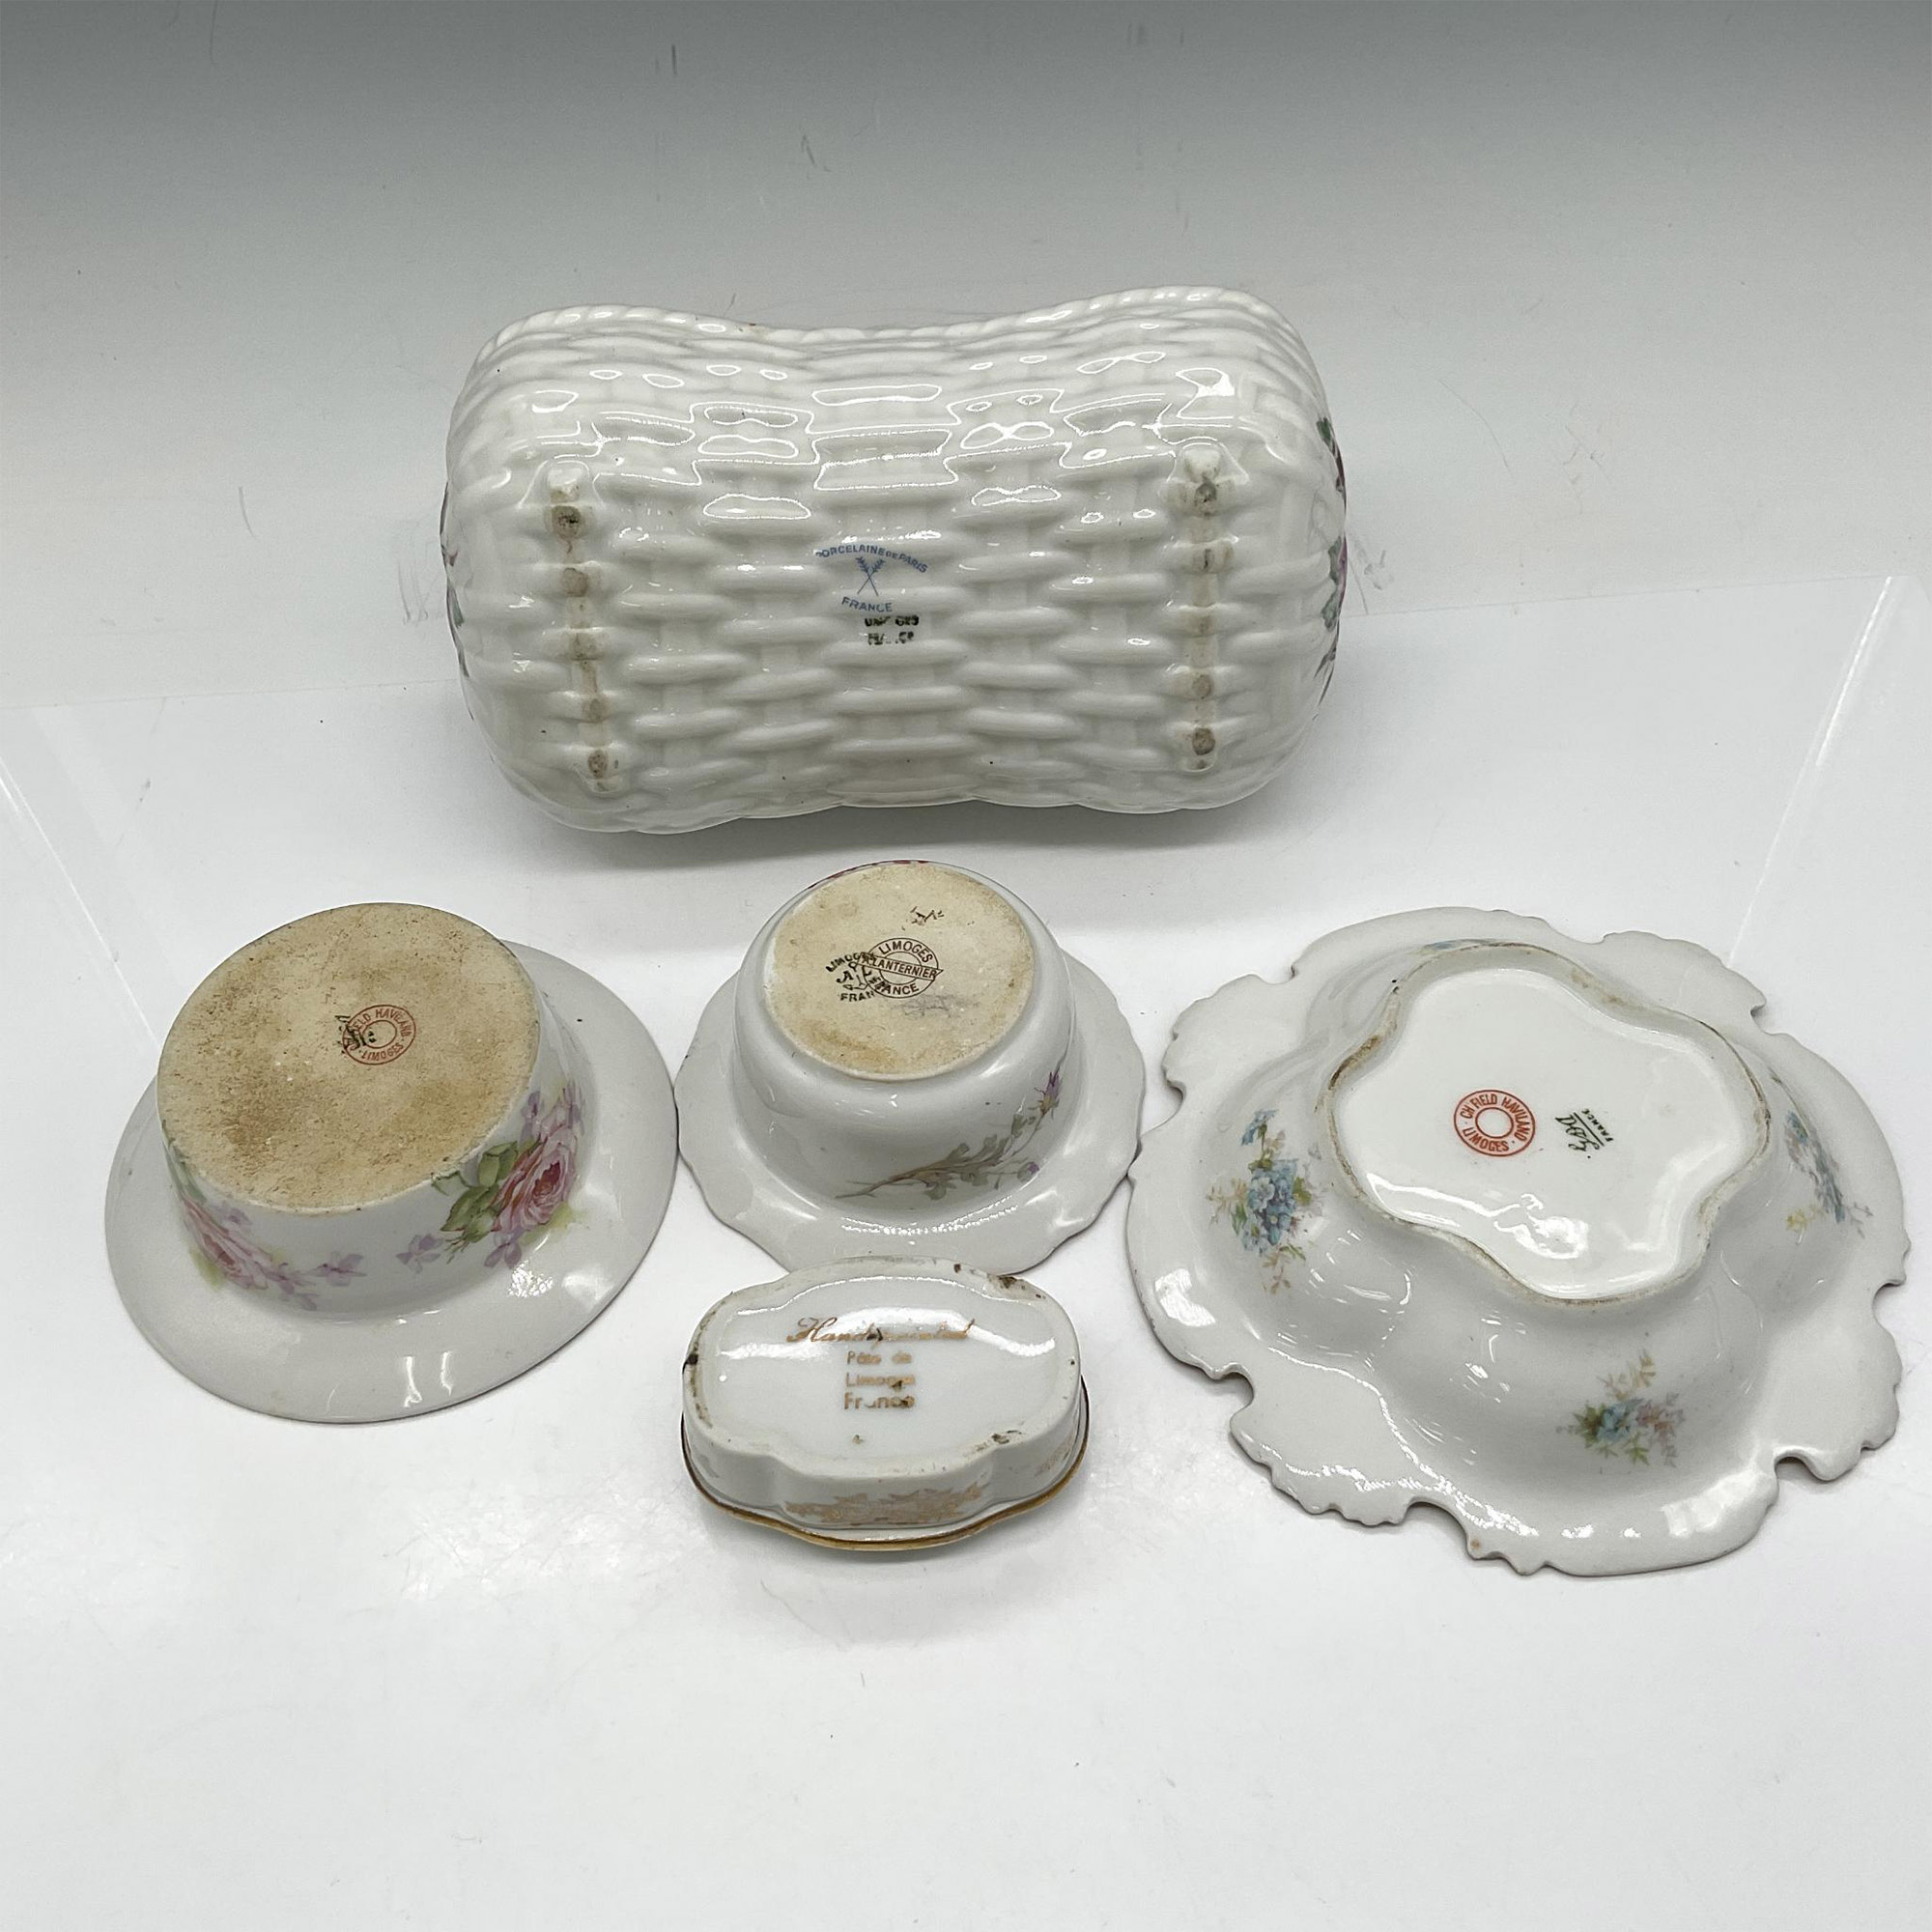 5pc Limoges Porcelain Home Decor Pieces - Image 3 of 3